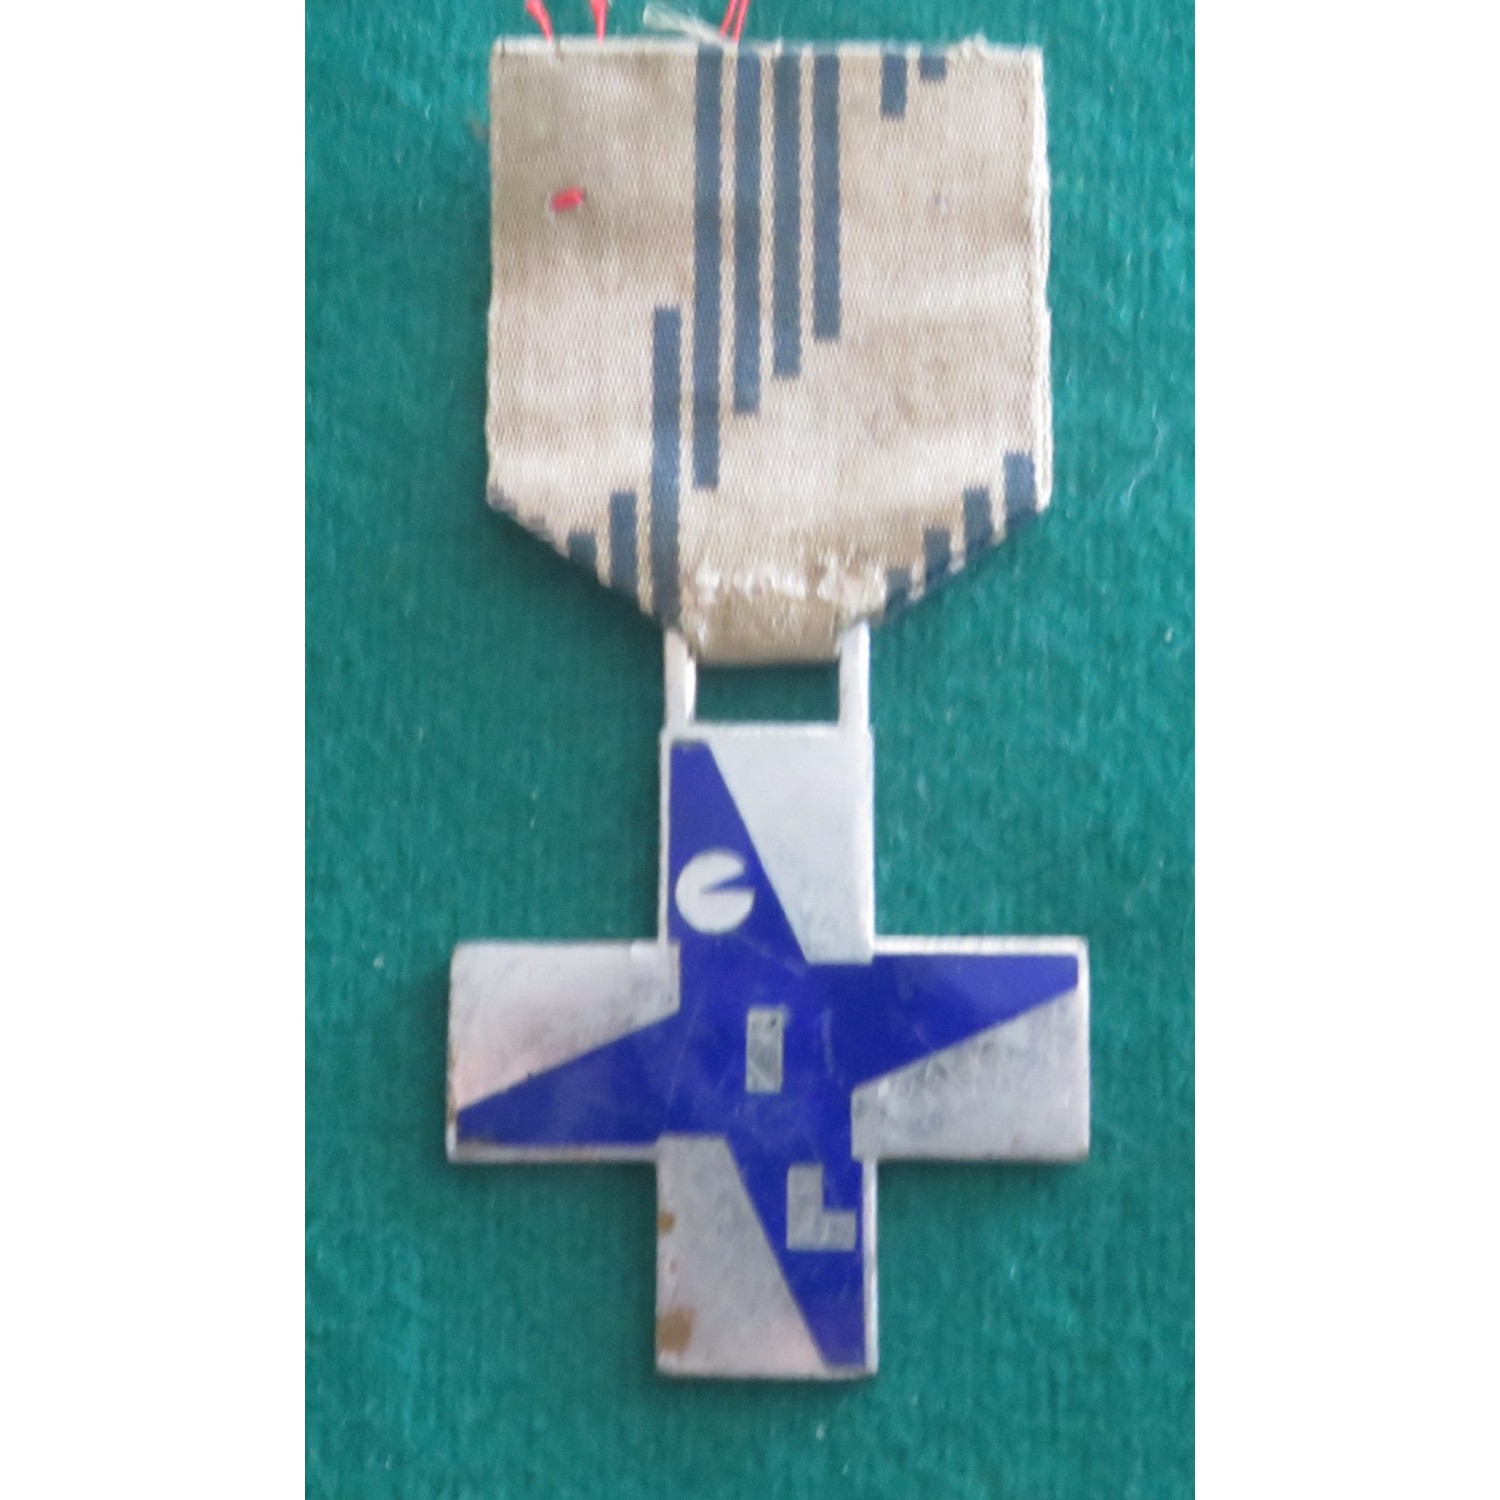 GIL cross medal, blue color, large model